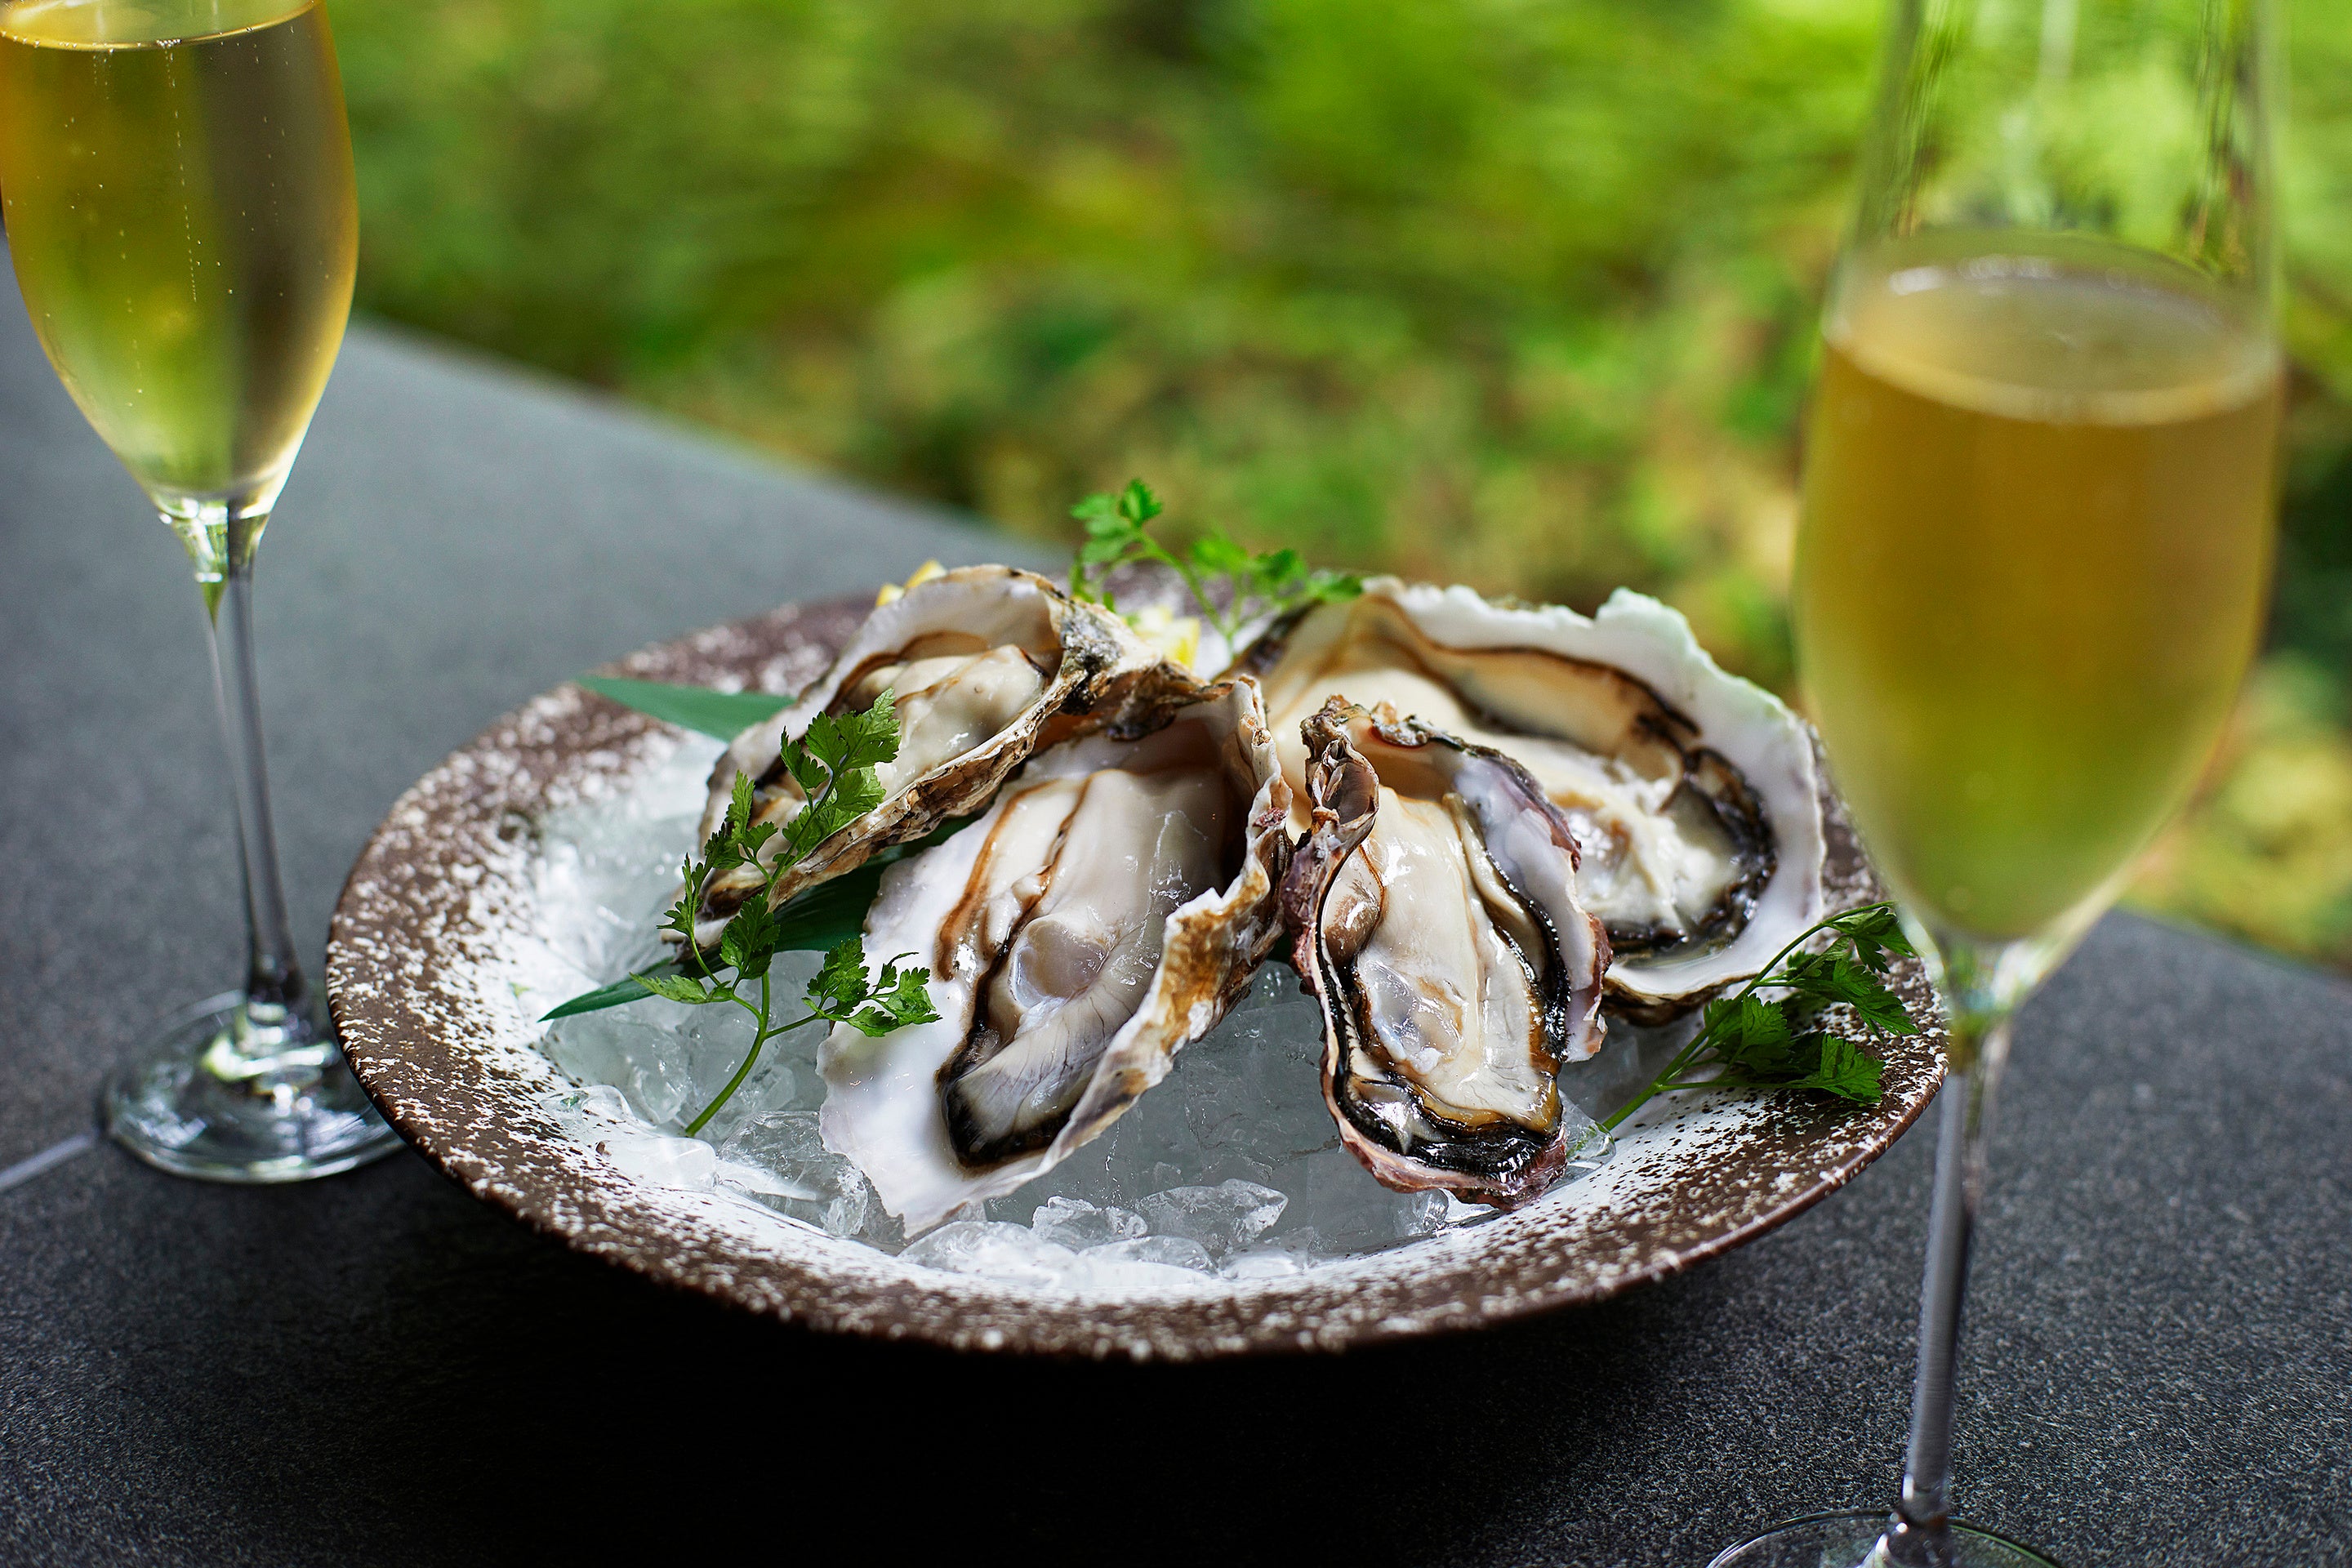 新鮮な牡蠣やシーフードを楽しむ夏のディナーメニュー『Oysters in the Forest』がスタート